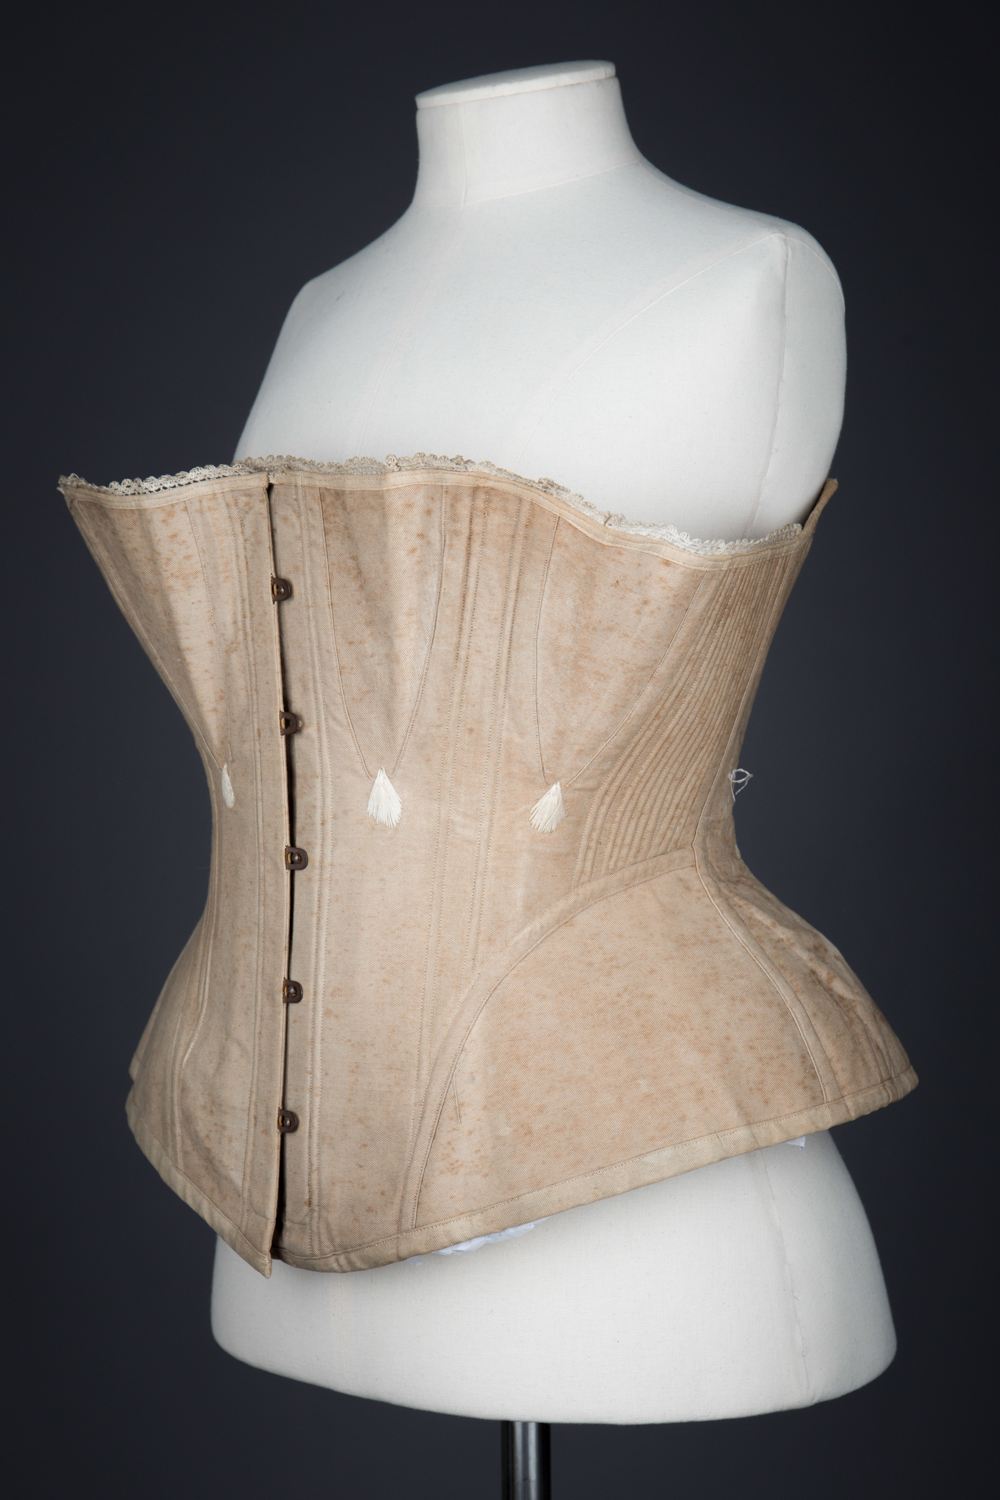 Victorian White Cotton Twill Stays Health Corset Camisole Top Underwear